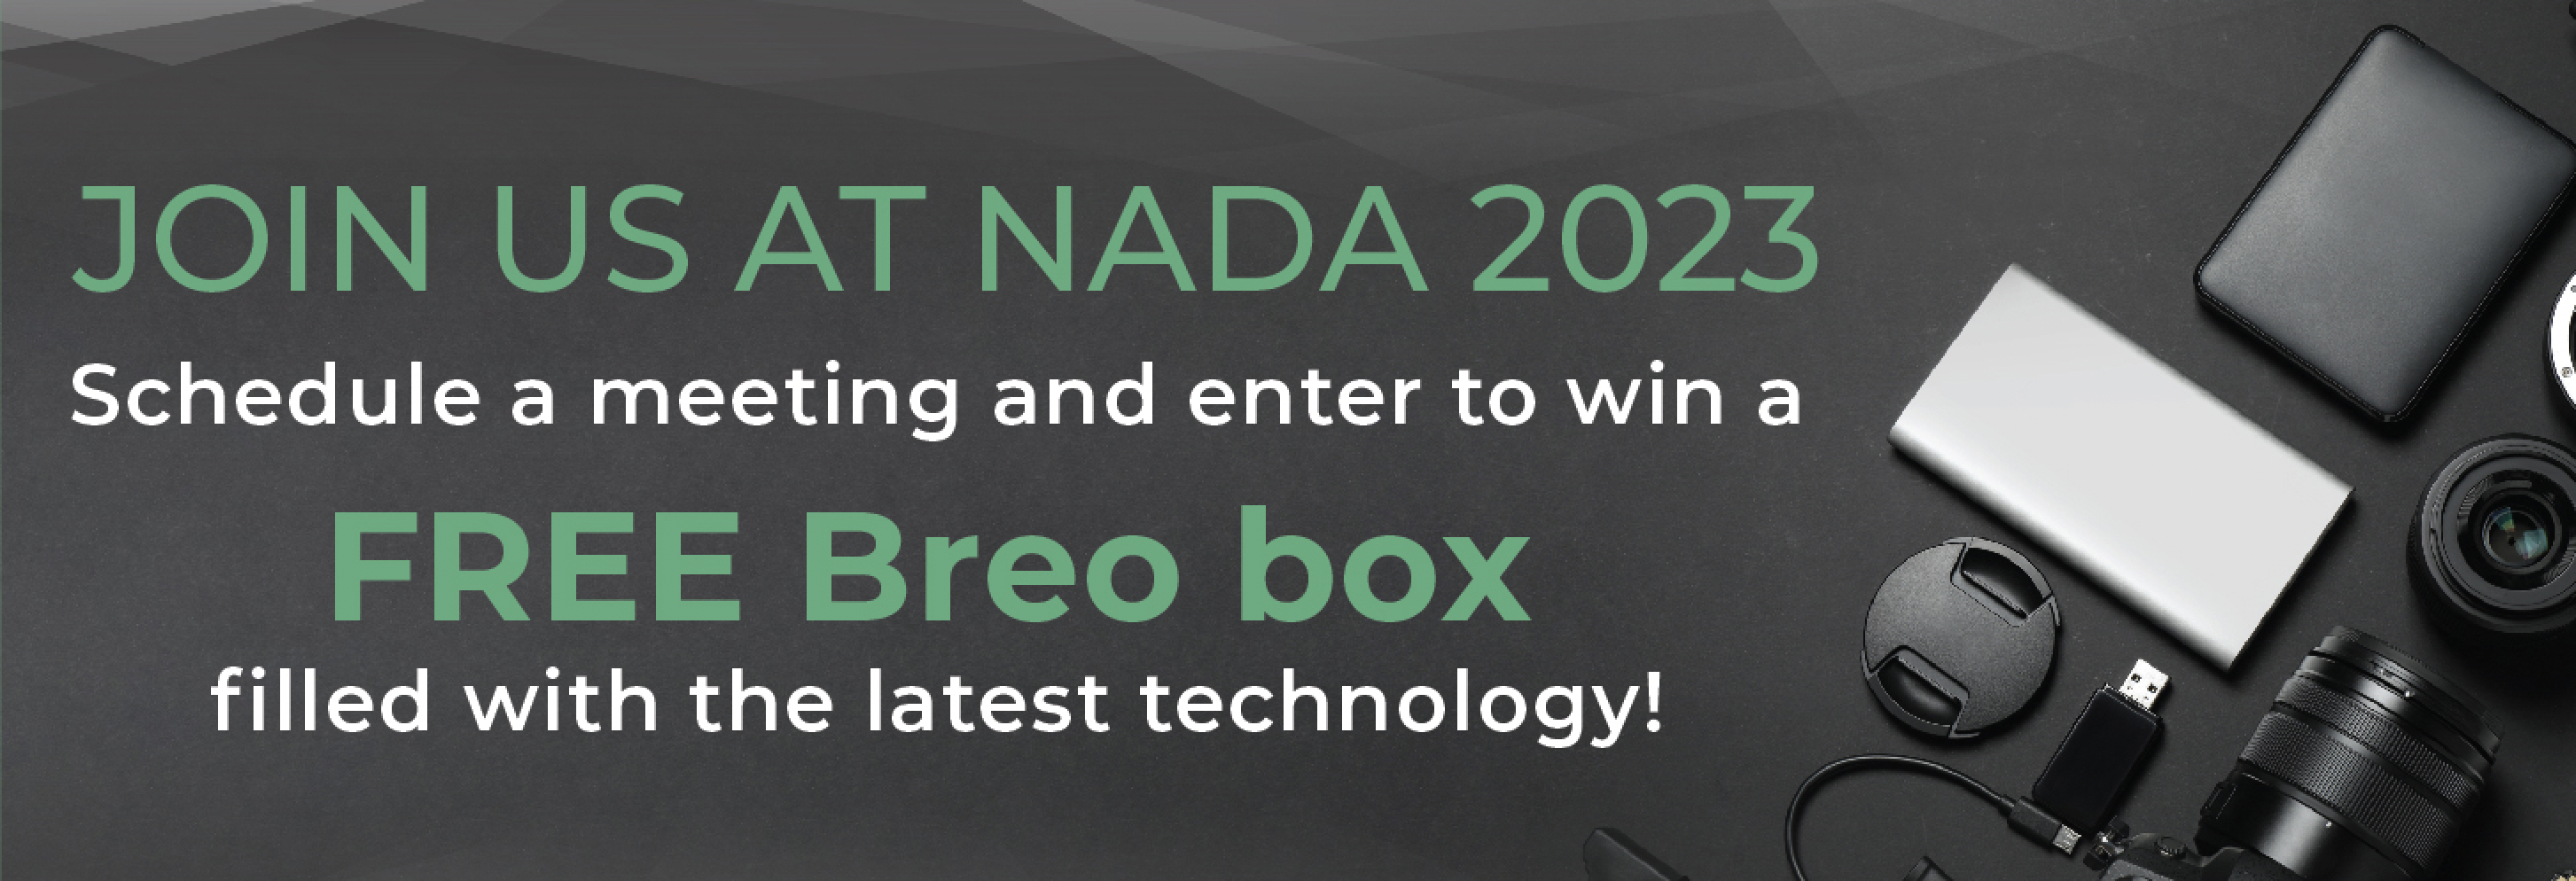 Win at NADA 2023 - Activator